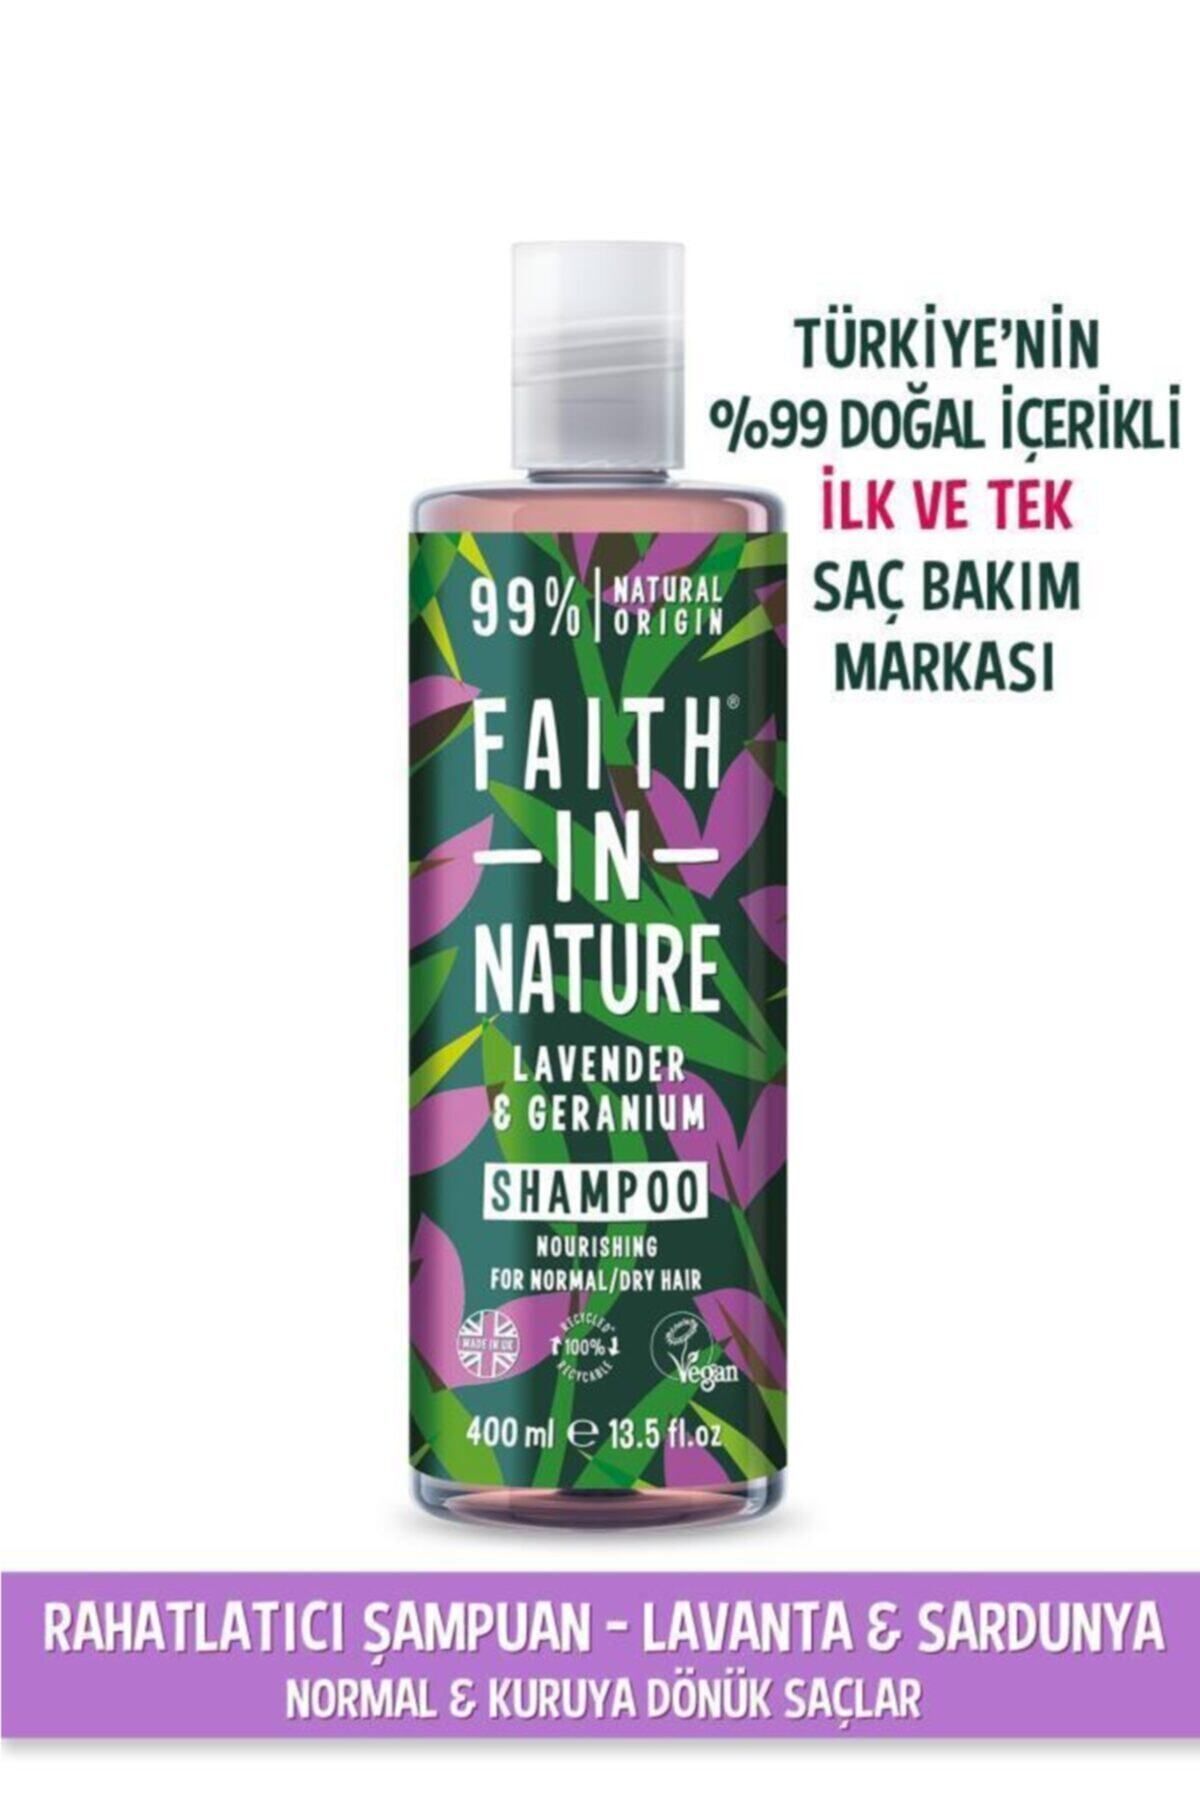 Faith In Nature %99 Doğal Rahatlatıcı Şampuan Lavanta&sardunya Normal&Kuruya Dönük Saçlar Için